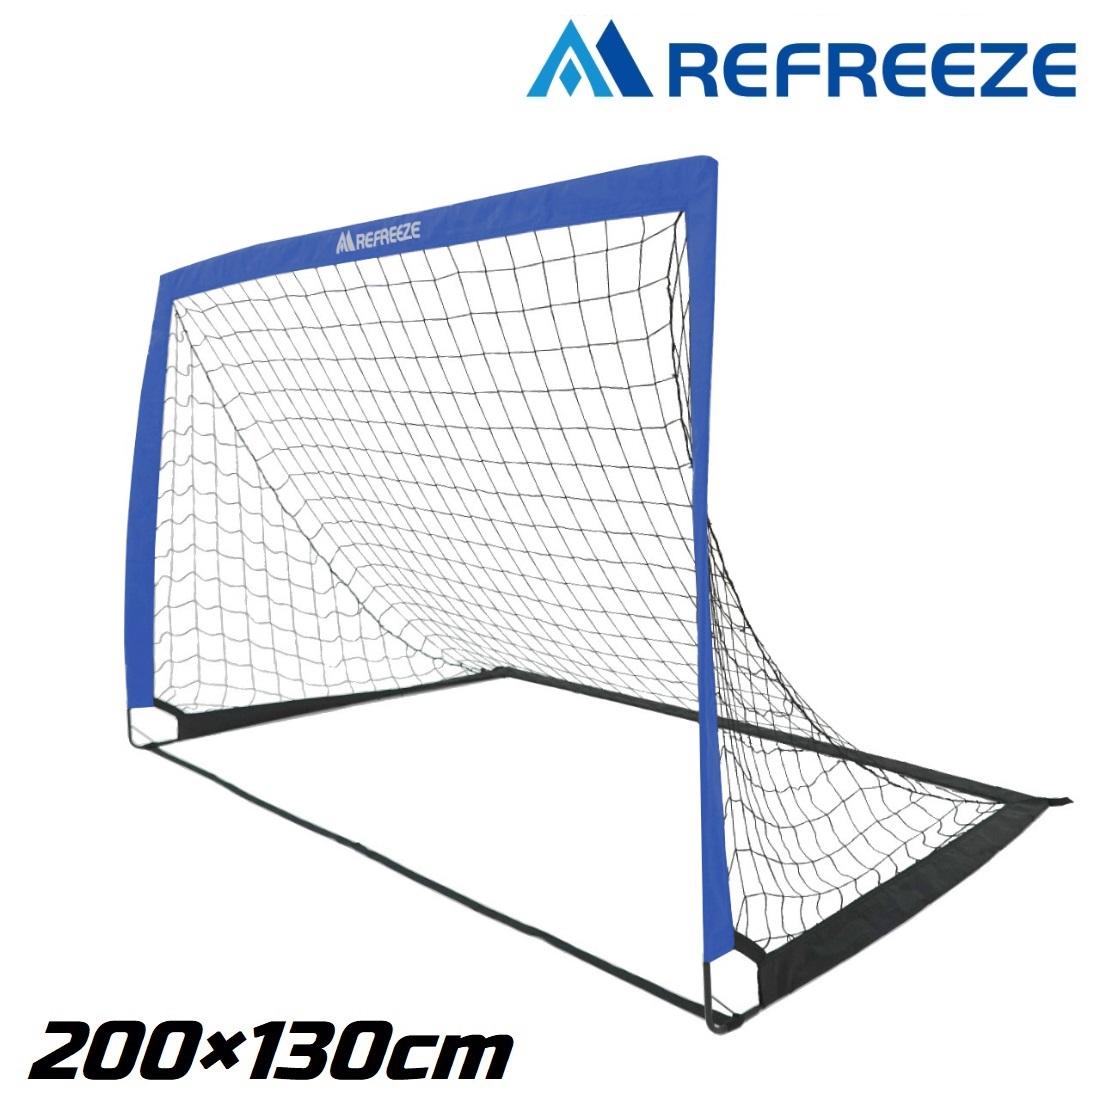 REFREEZE(リフリーズ) 選べる3カラー 200×130cm 折りたたみ サッカーゴール ブルー 1個 収納バッグ付き ポータブル フットサルゴール